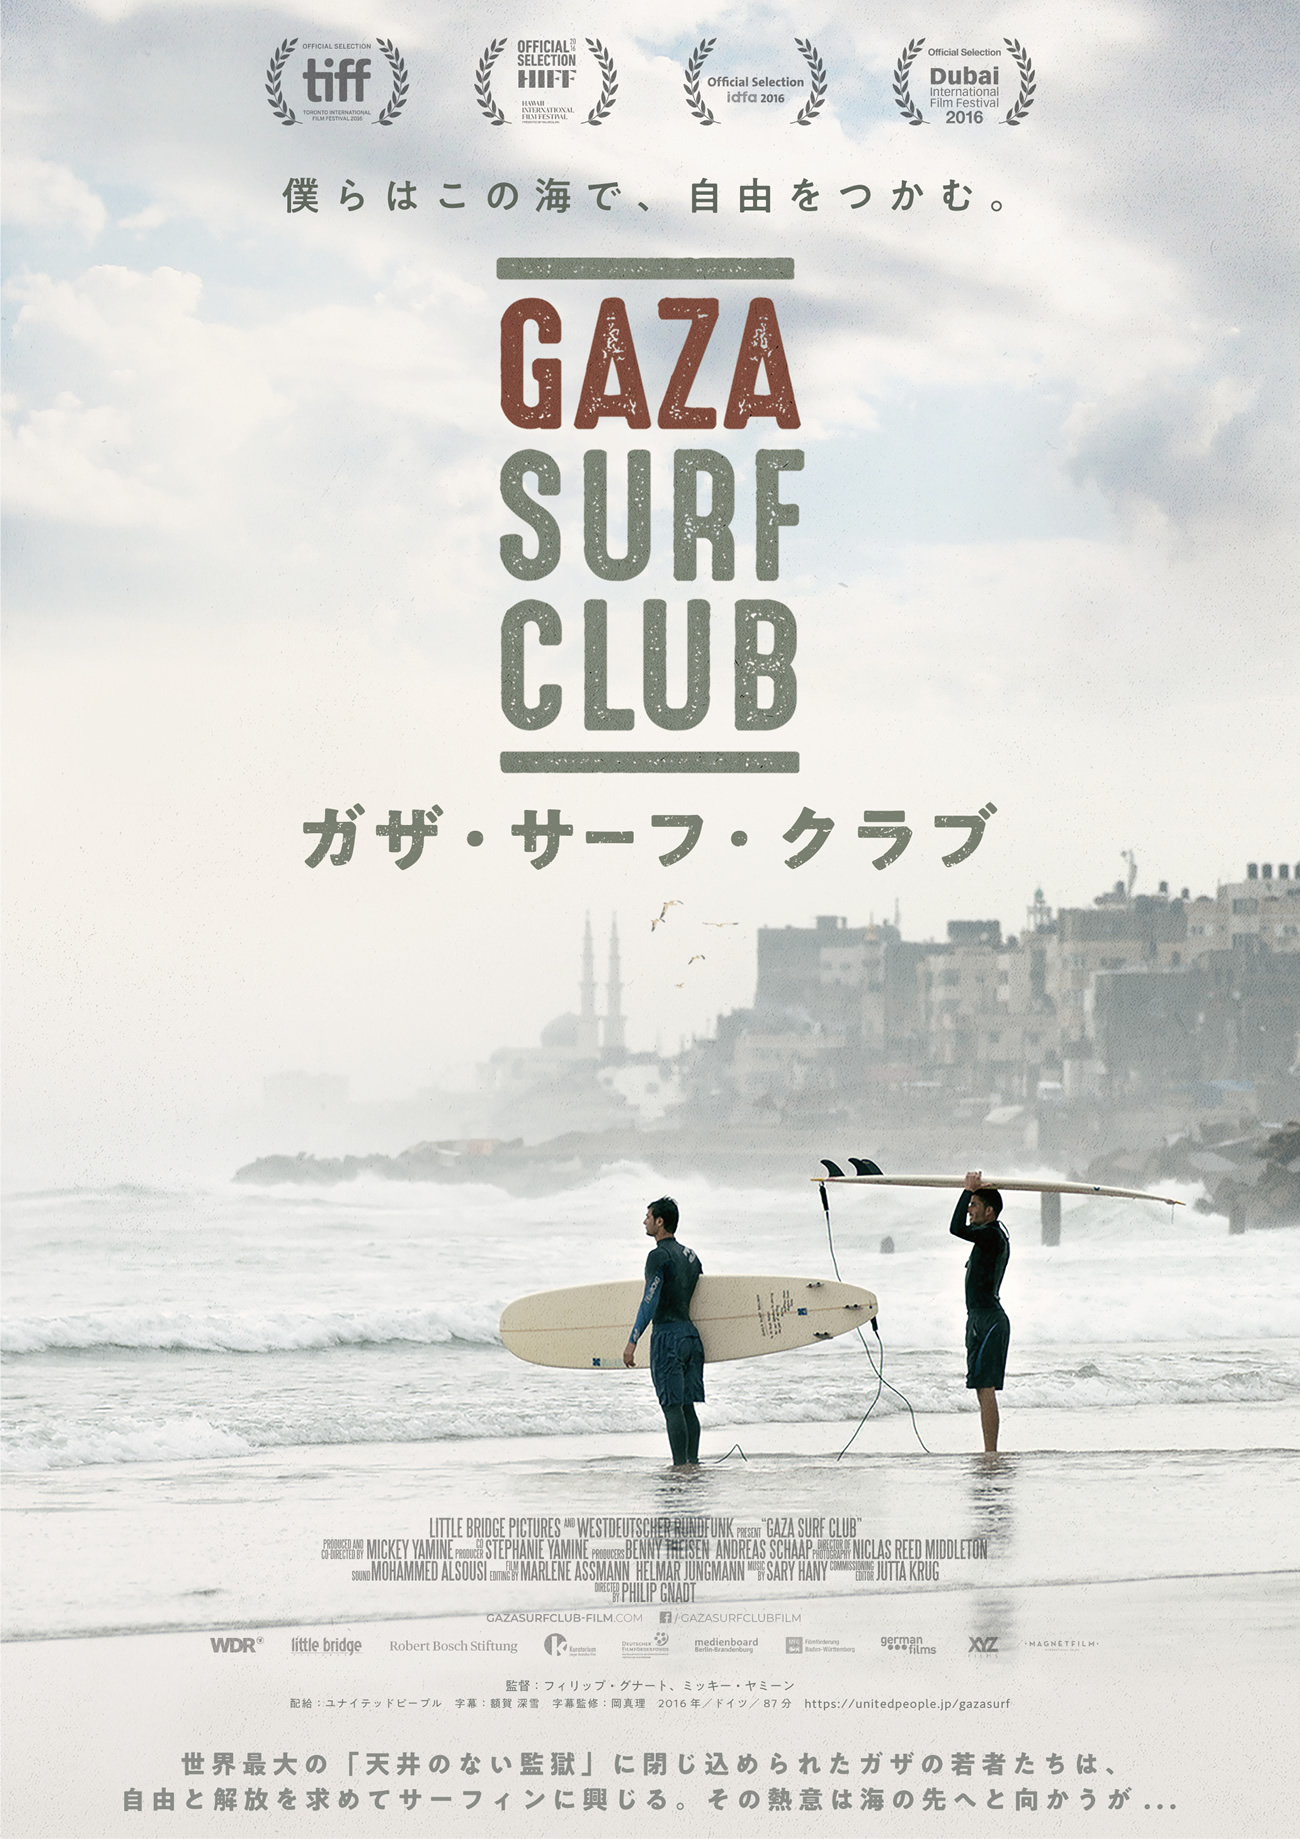 映画『ガザ・サーフ・クラブ』オフィシャルHP – 僕らはこの海で、自由をつかむ。